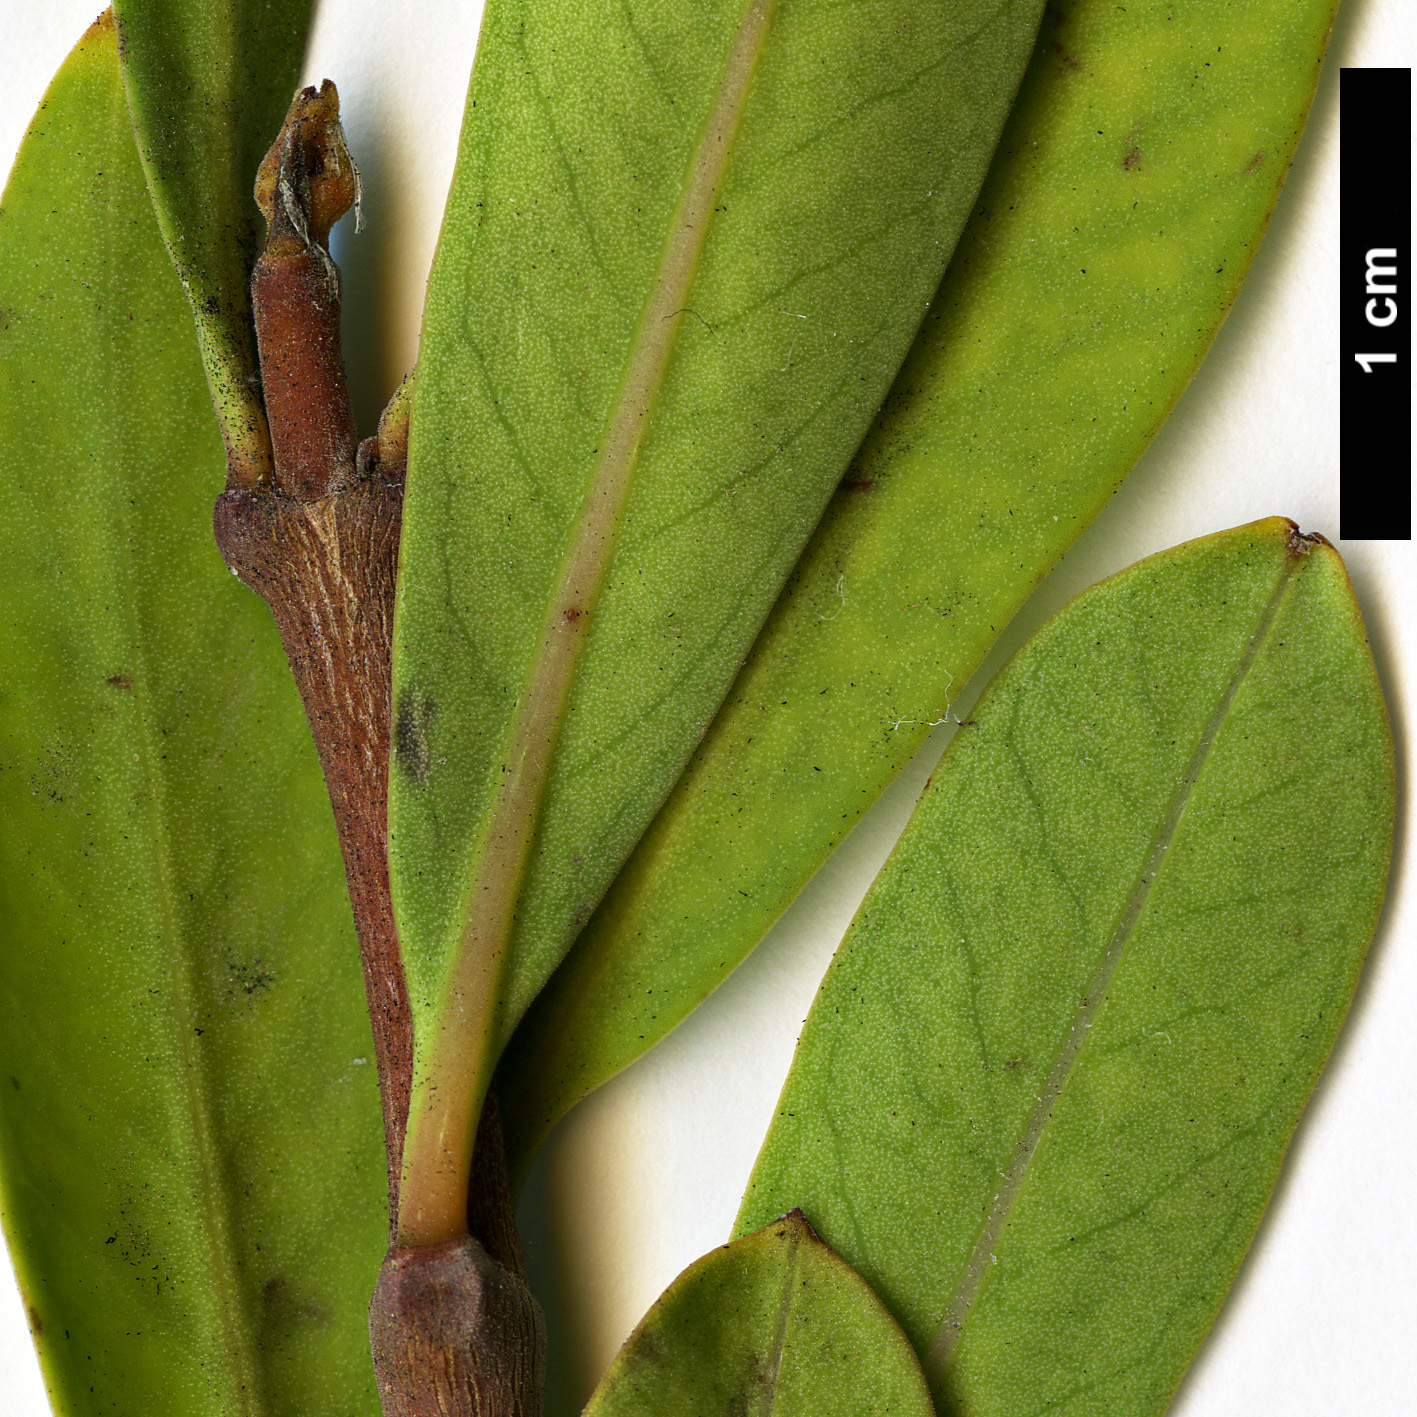 High resolution image: Family: Apocynaceae - Genus: Periploca - Taxon: laevigata